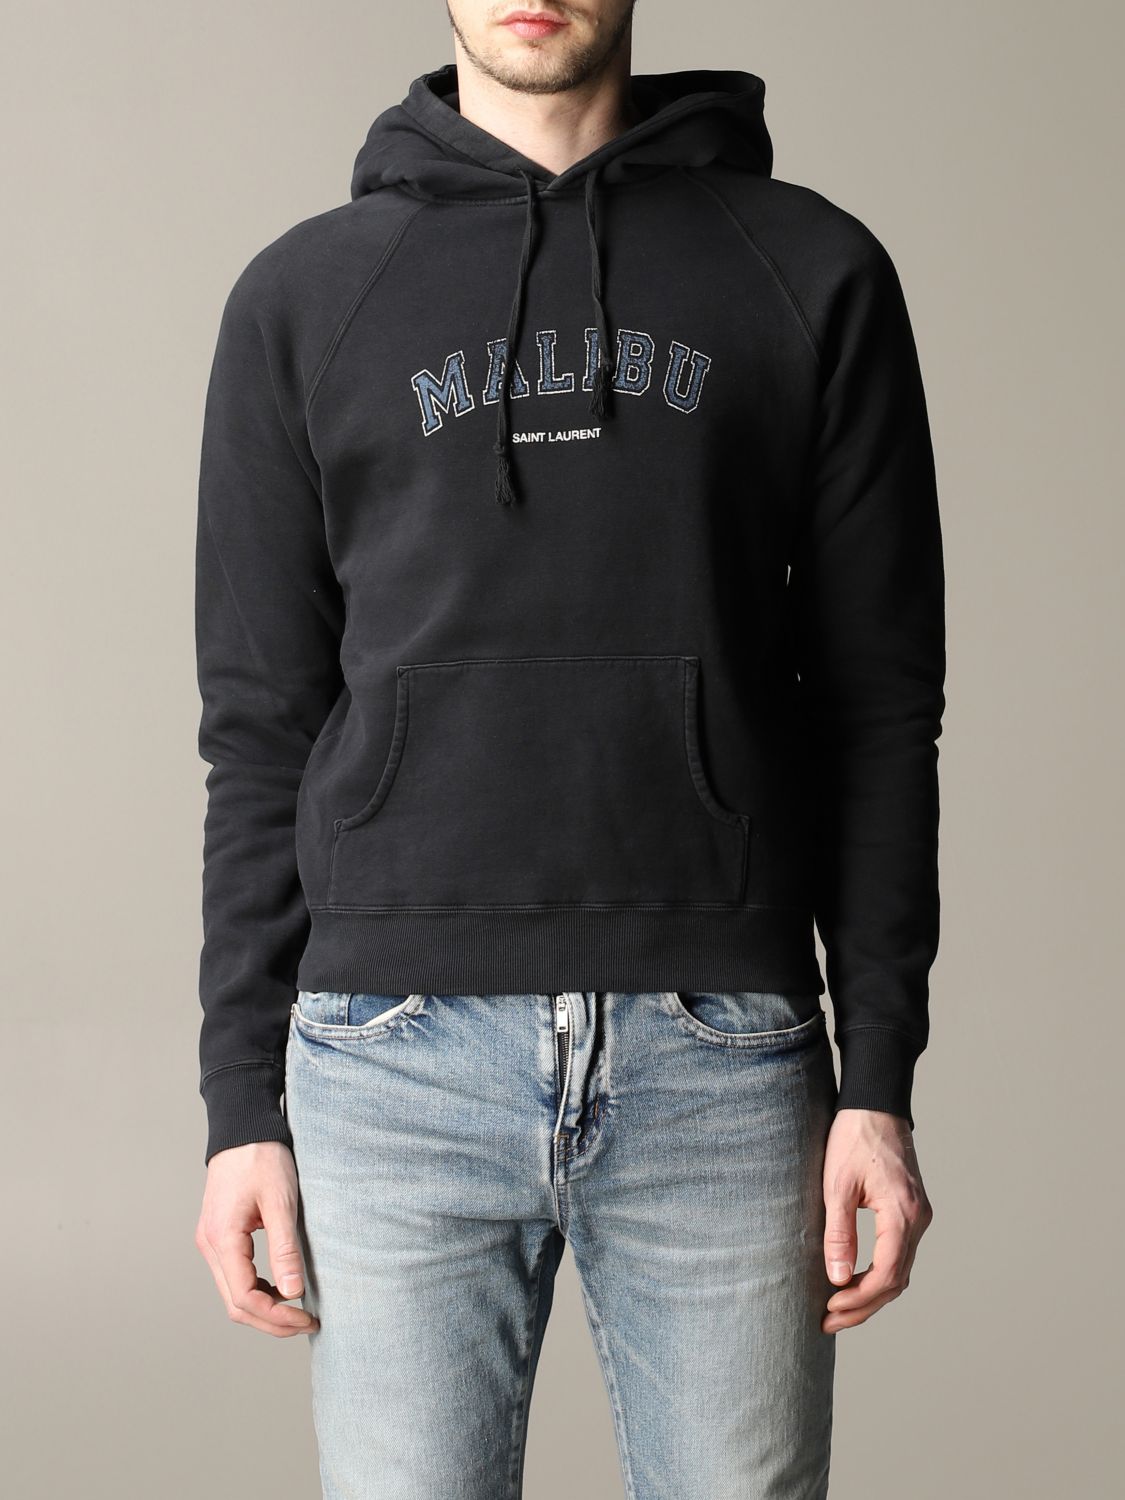 Buy > men's saint laurent hoodie > in stock